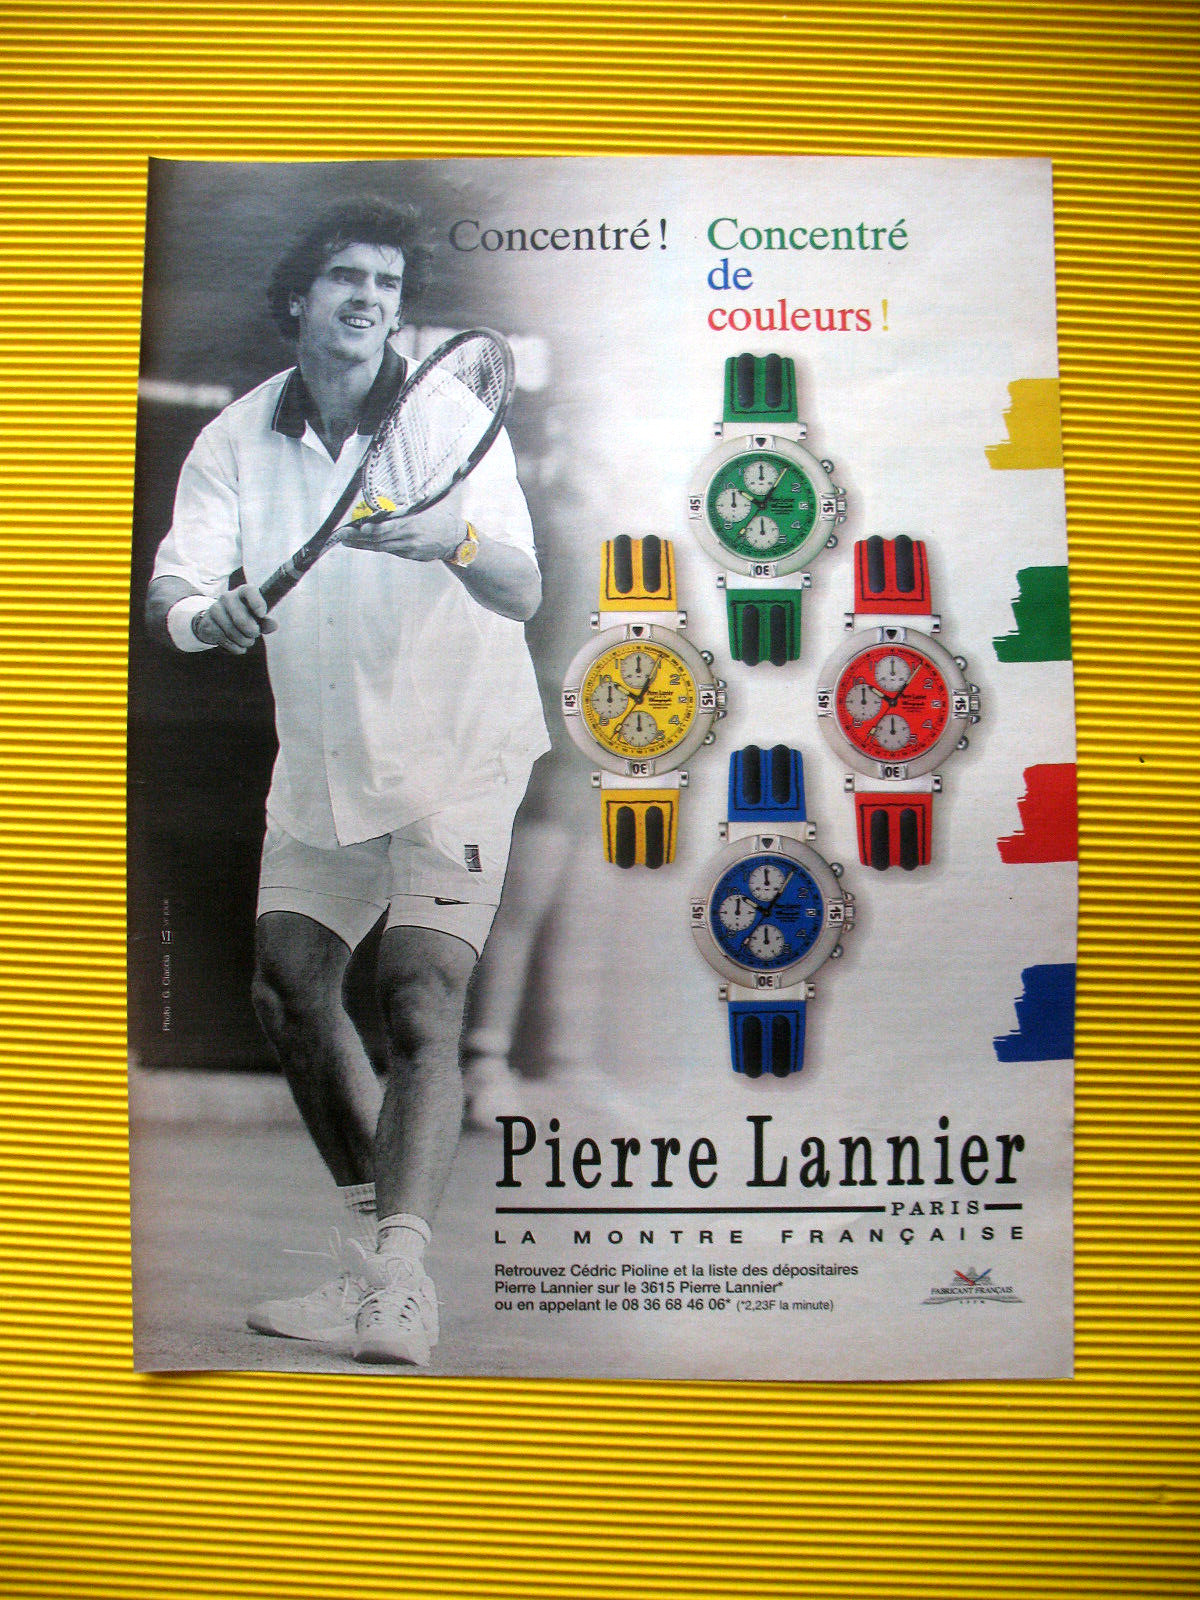 PRESS ADVERTISEMENT PIERRE LANNIER WATCHES FRANCE TENNIS CEDRIC PIOLINE AD 1997